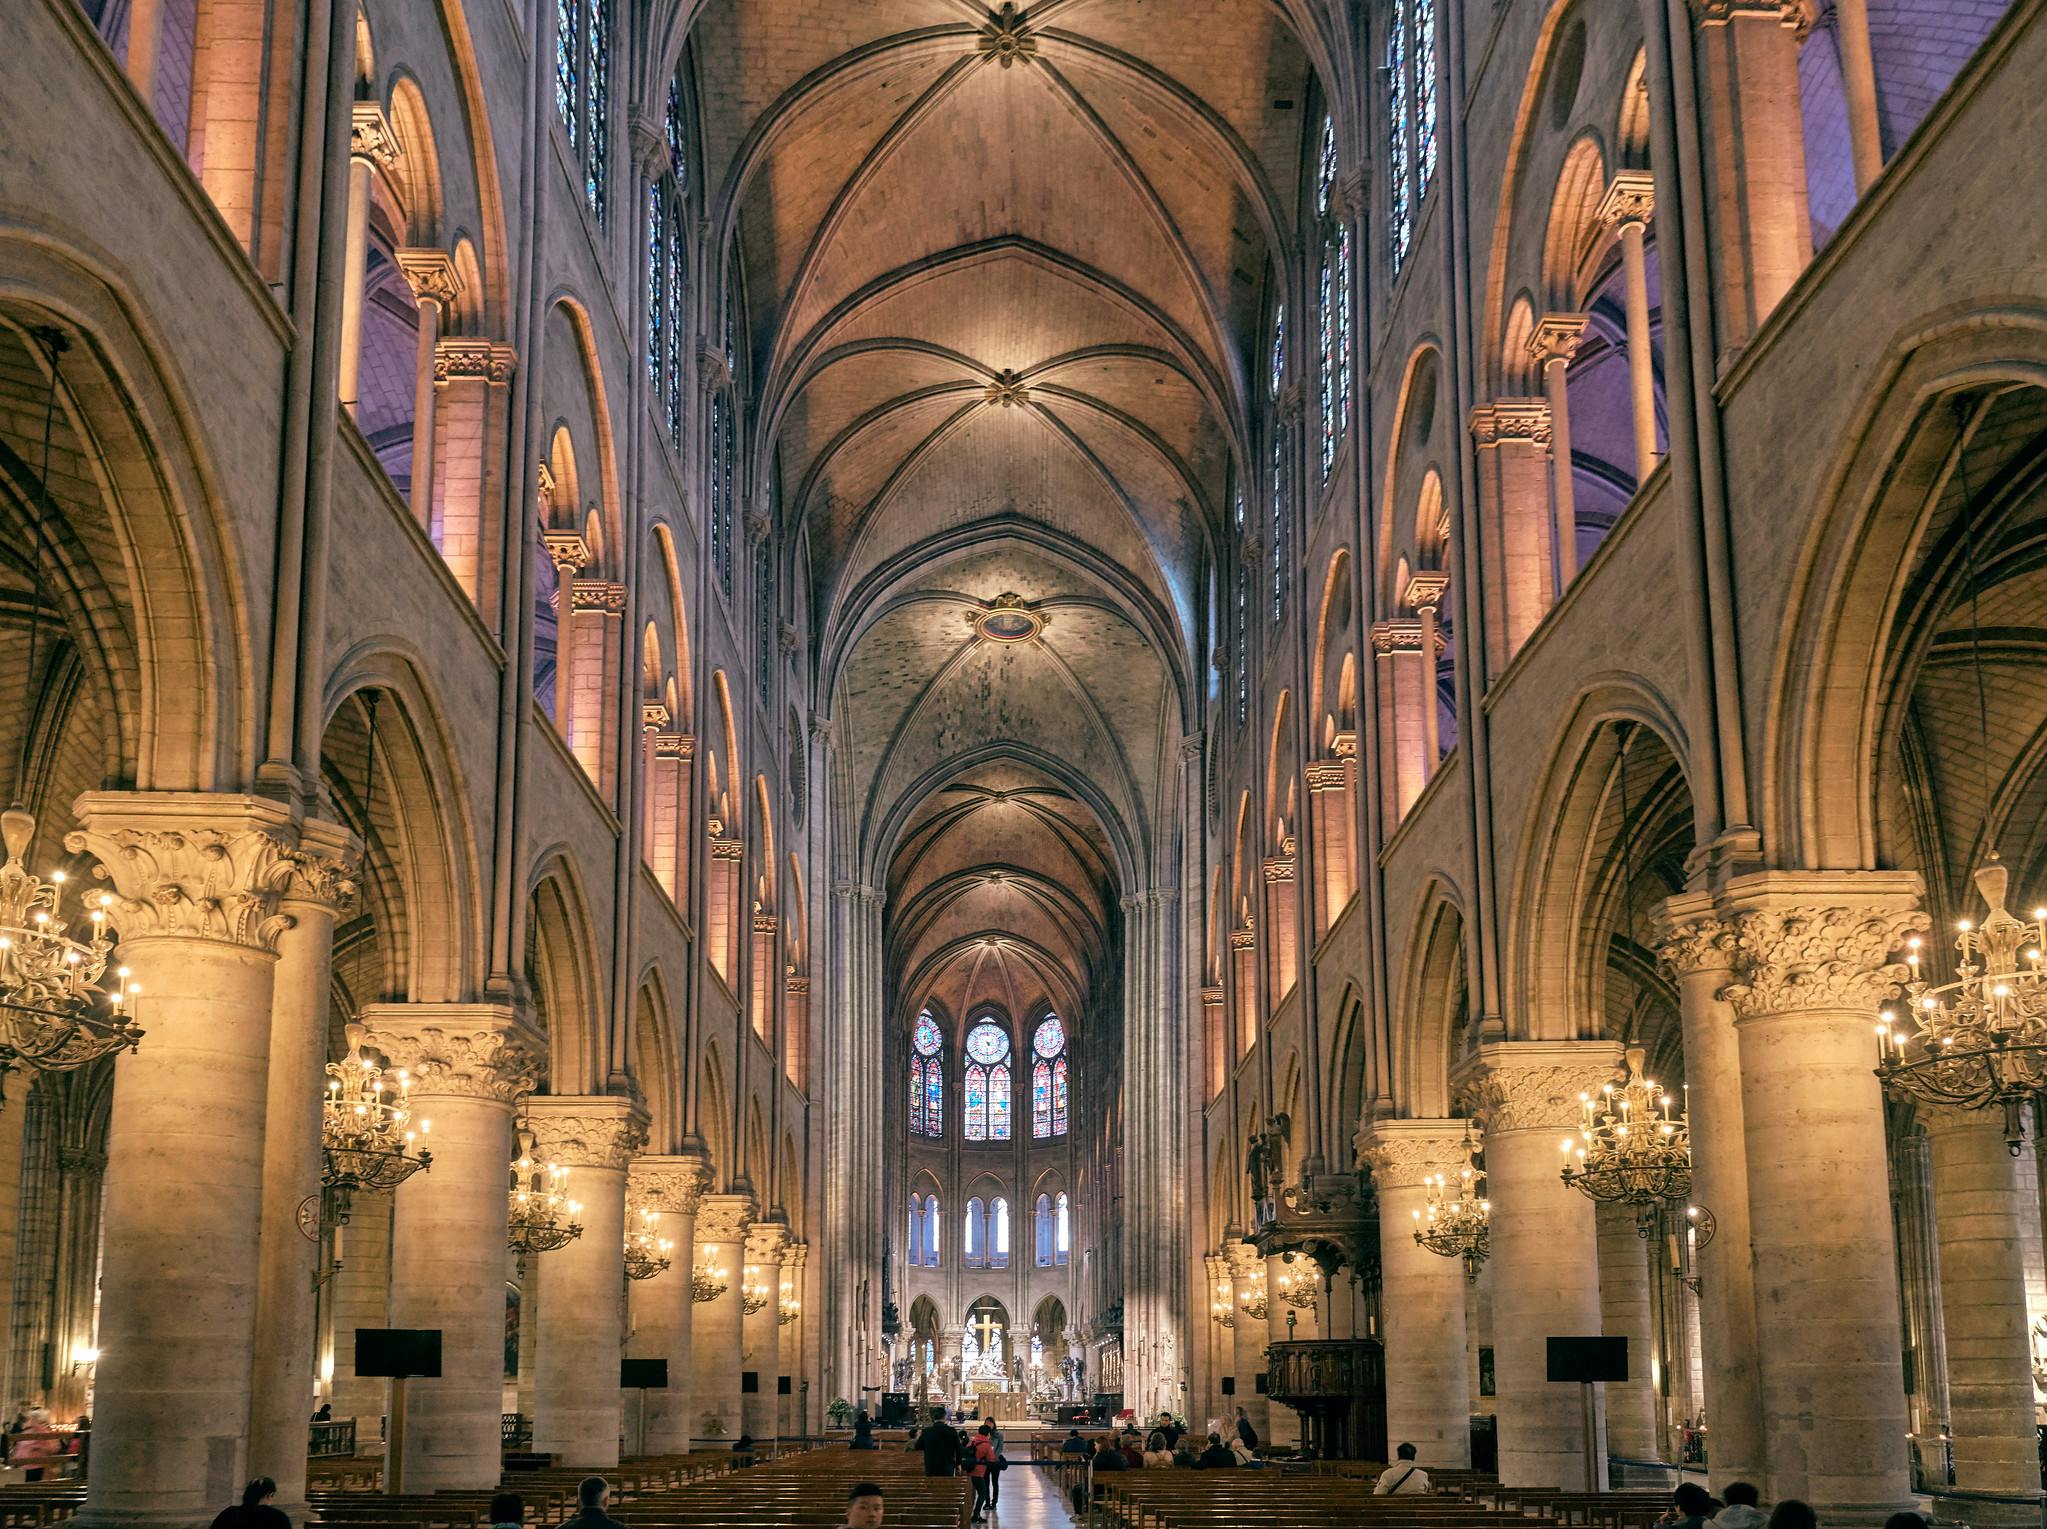 มหาวิหารนอเทรอดาม (Notre Dame Cathedral) สถานที่ศักดิ์สิทธิ์สุดอาถรรพ์